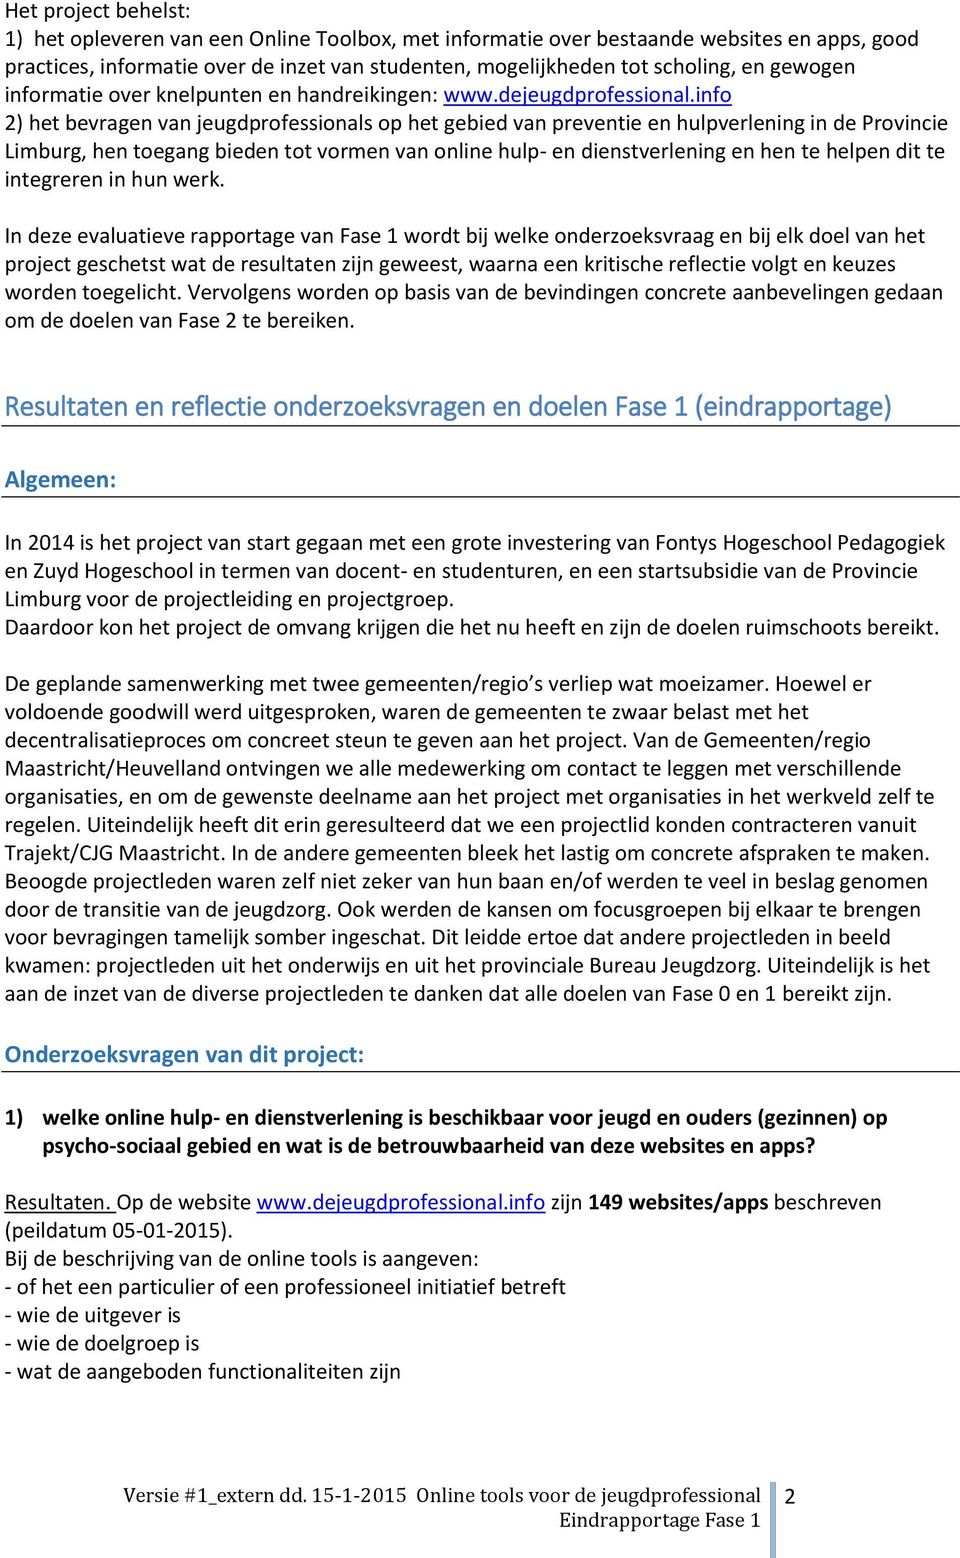 info 2) het bevragen van jeugdprofessionals op het gebied van preventie en hulpverlening in de Provincie Limburg, hen toegang bieden tot vormen van online hulp- en dienstverlening en hen te helpen